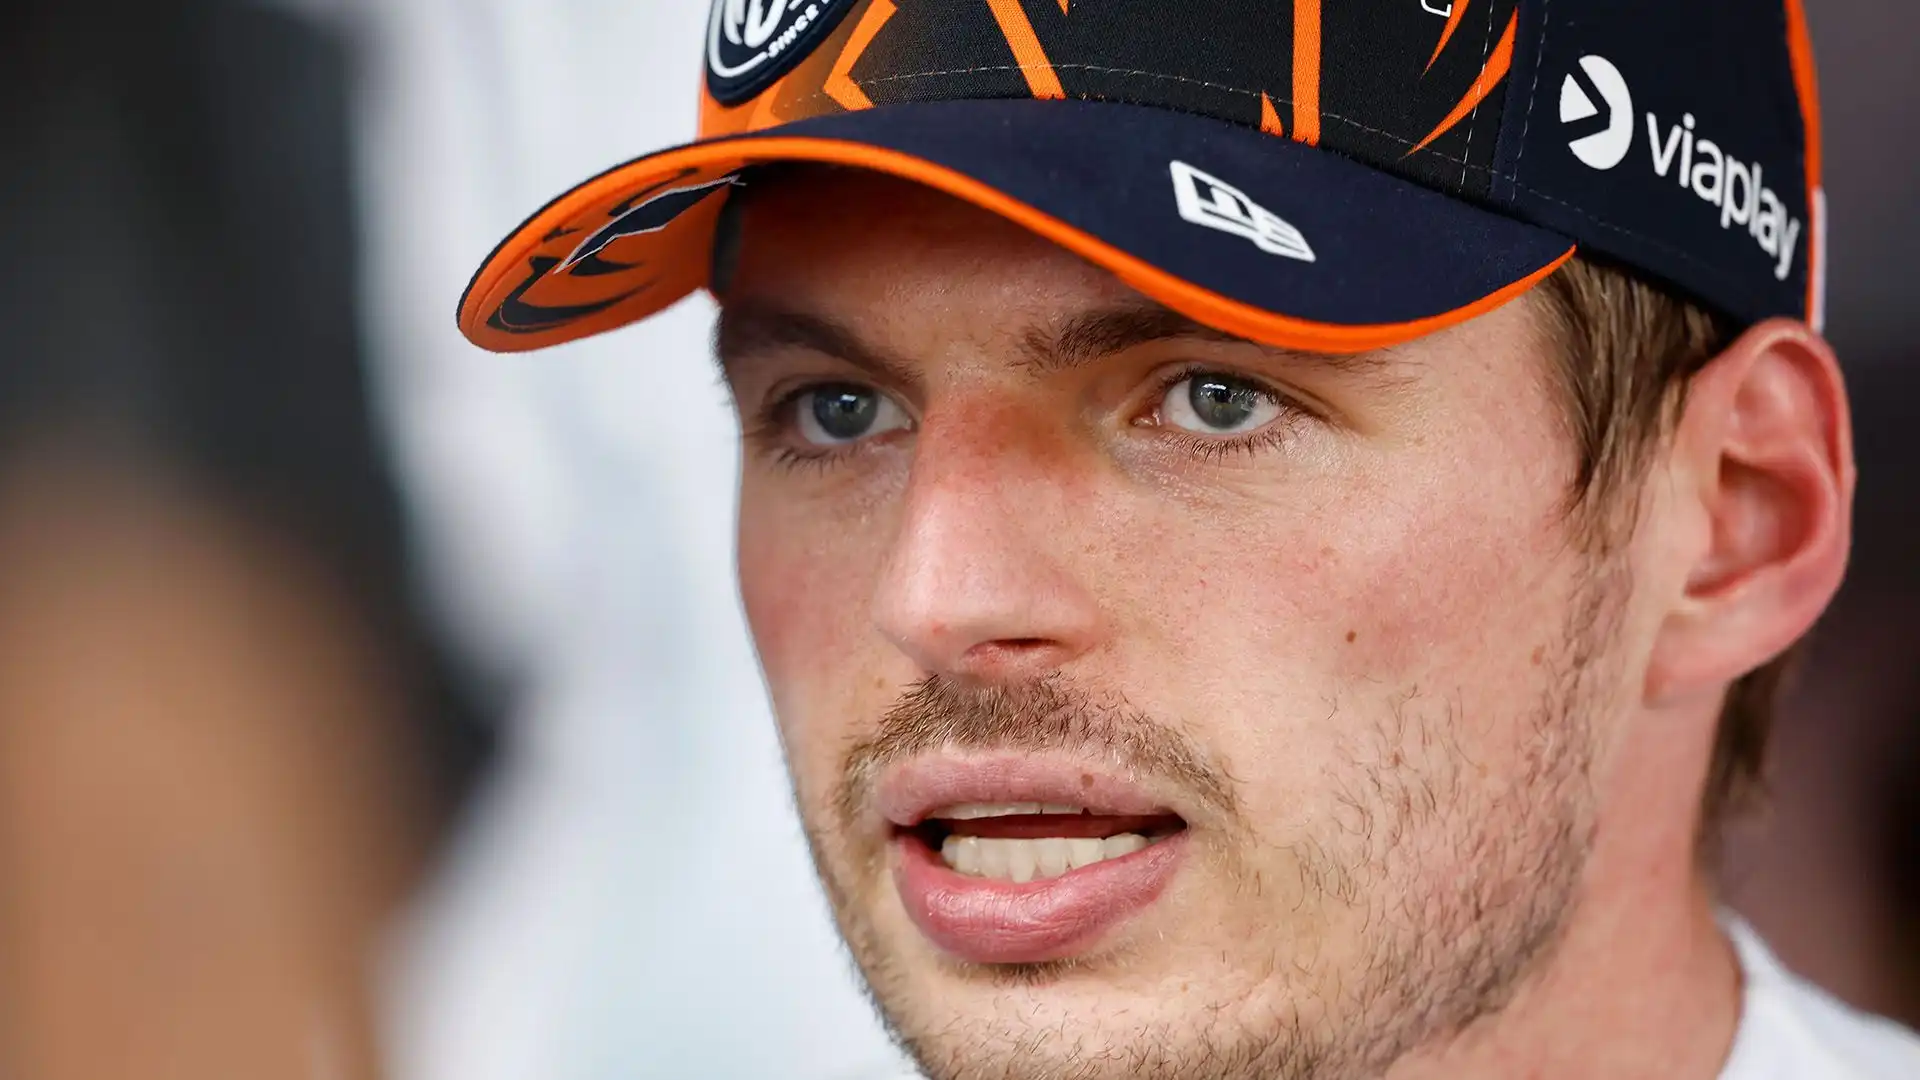 Anche il team principal della McLaren Andrea Stella ha tirato in ballo il 2021, sostenendo che Verstappen si è comportato così perché non è stato sanzionato in passato per quelle stesse manovre